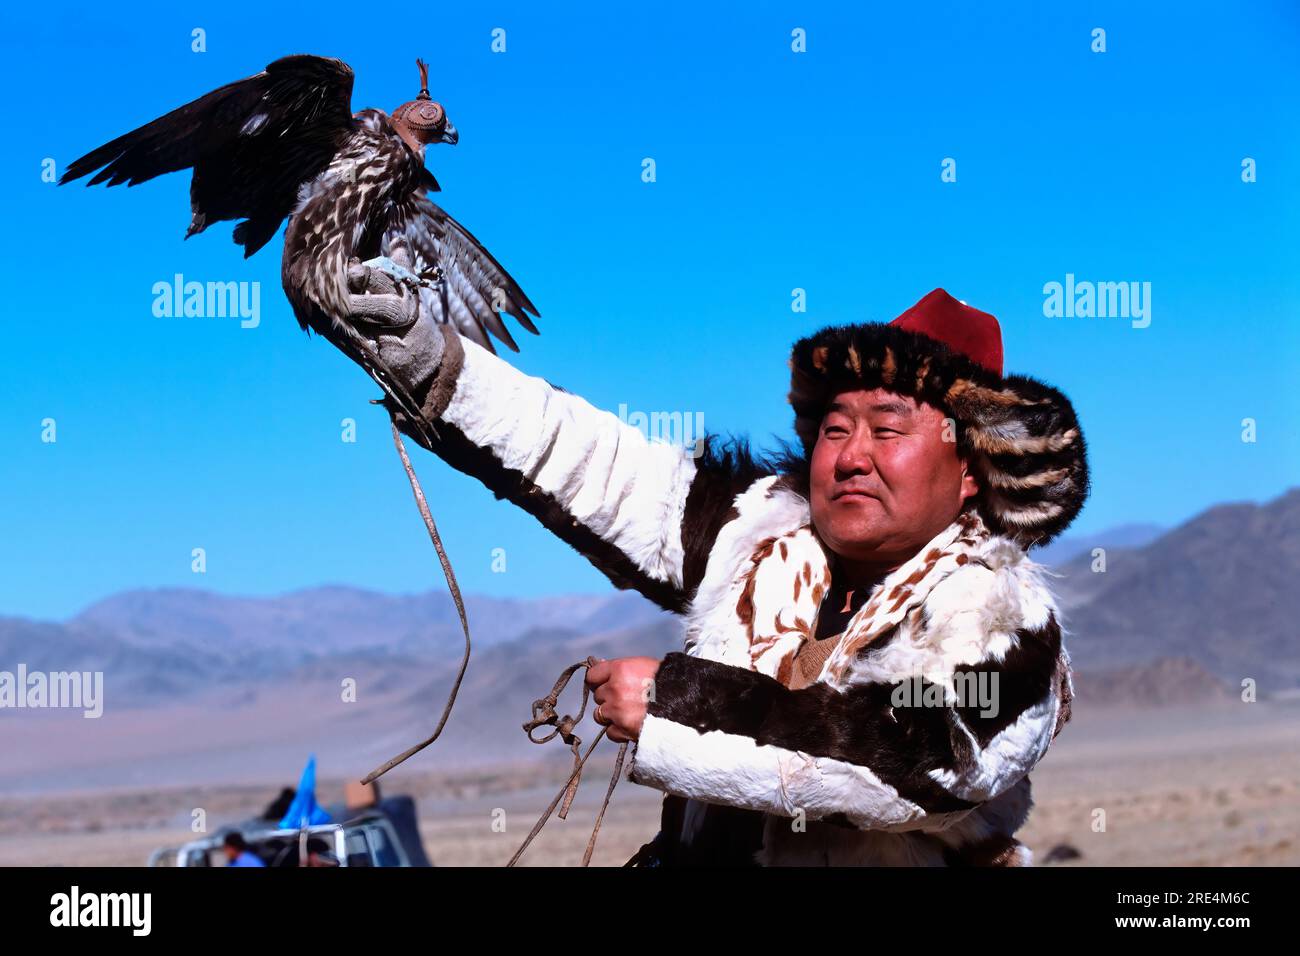 Montagne de l'Altaï, chasseur d'aigle kazakh avec un faucon, Festival de l'aigle doré, Bayan Ölgii, montagnes de l'Altaï, Mongolie Banque D'Images